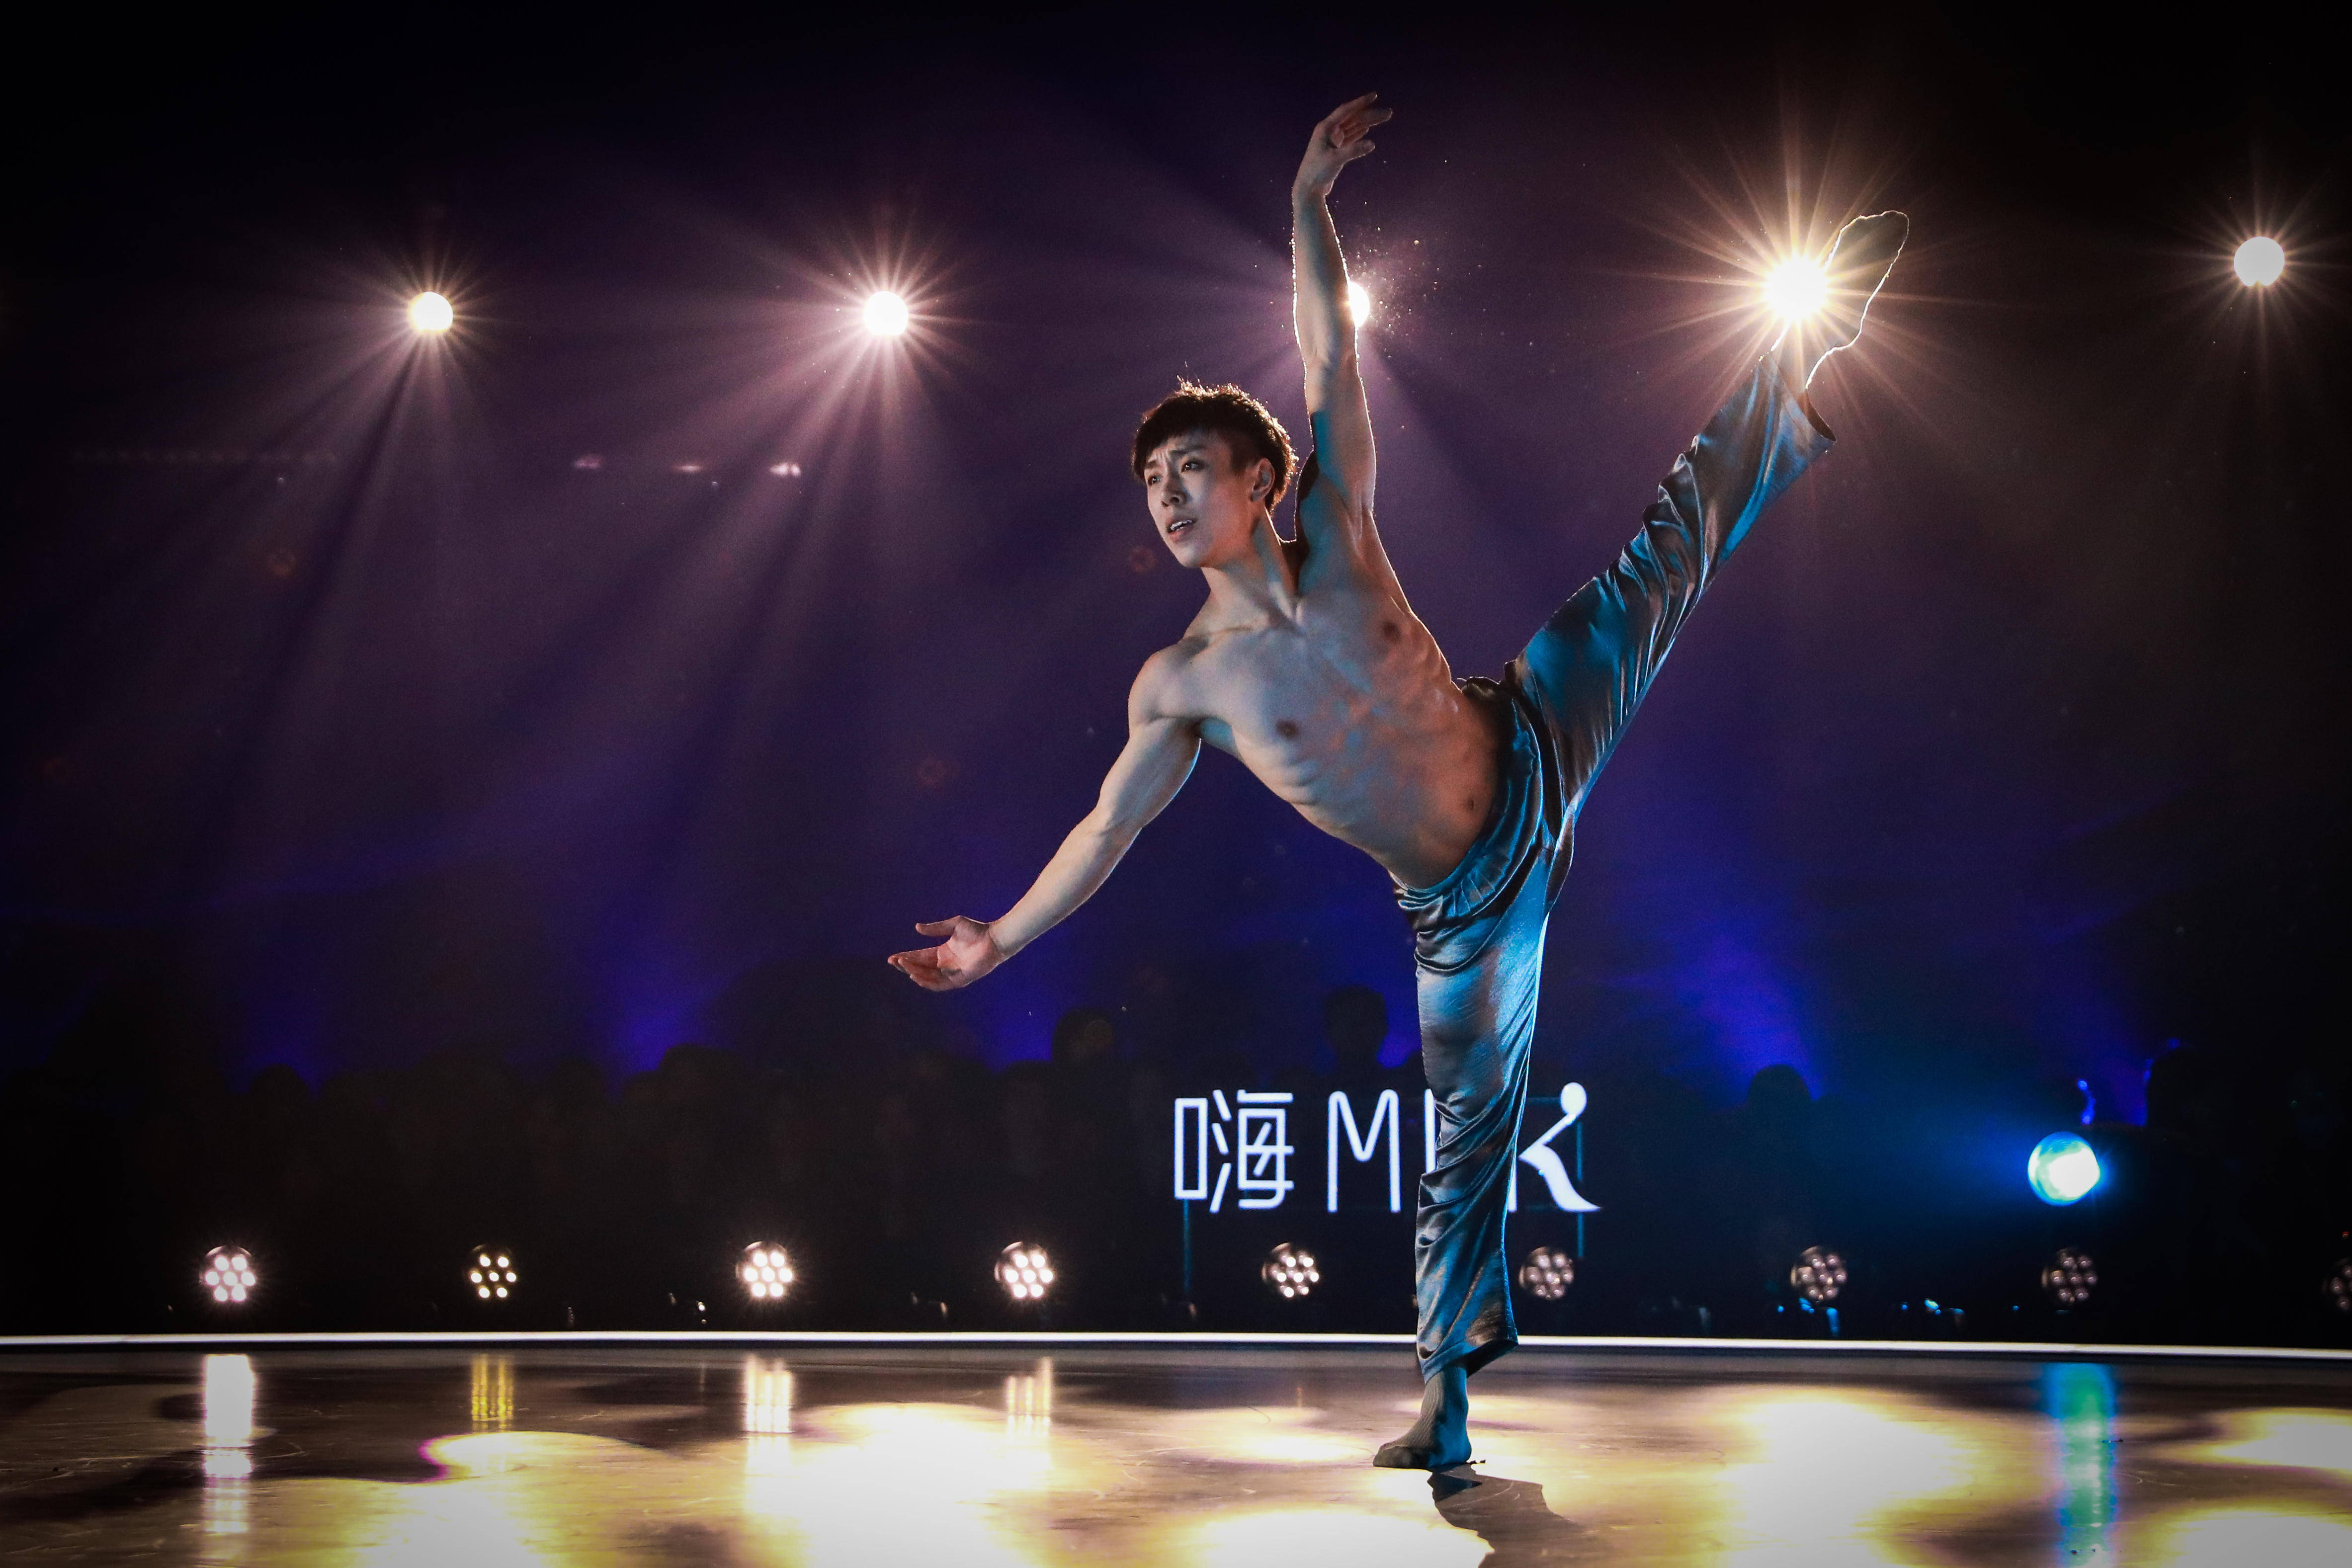 湖南卫视顶级青年舞者竞技节目《舞蹈风暴》第二季上周开播之后,便